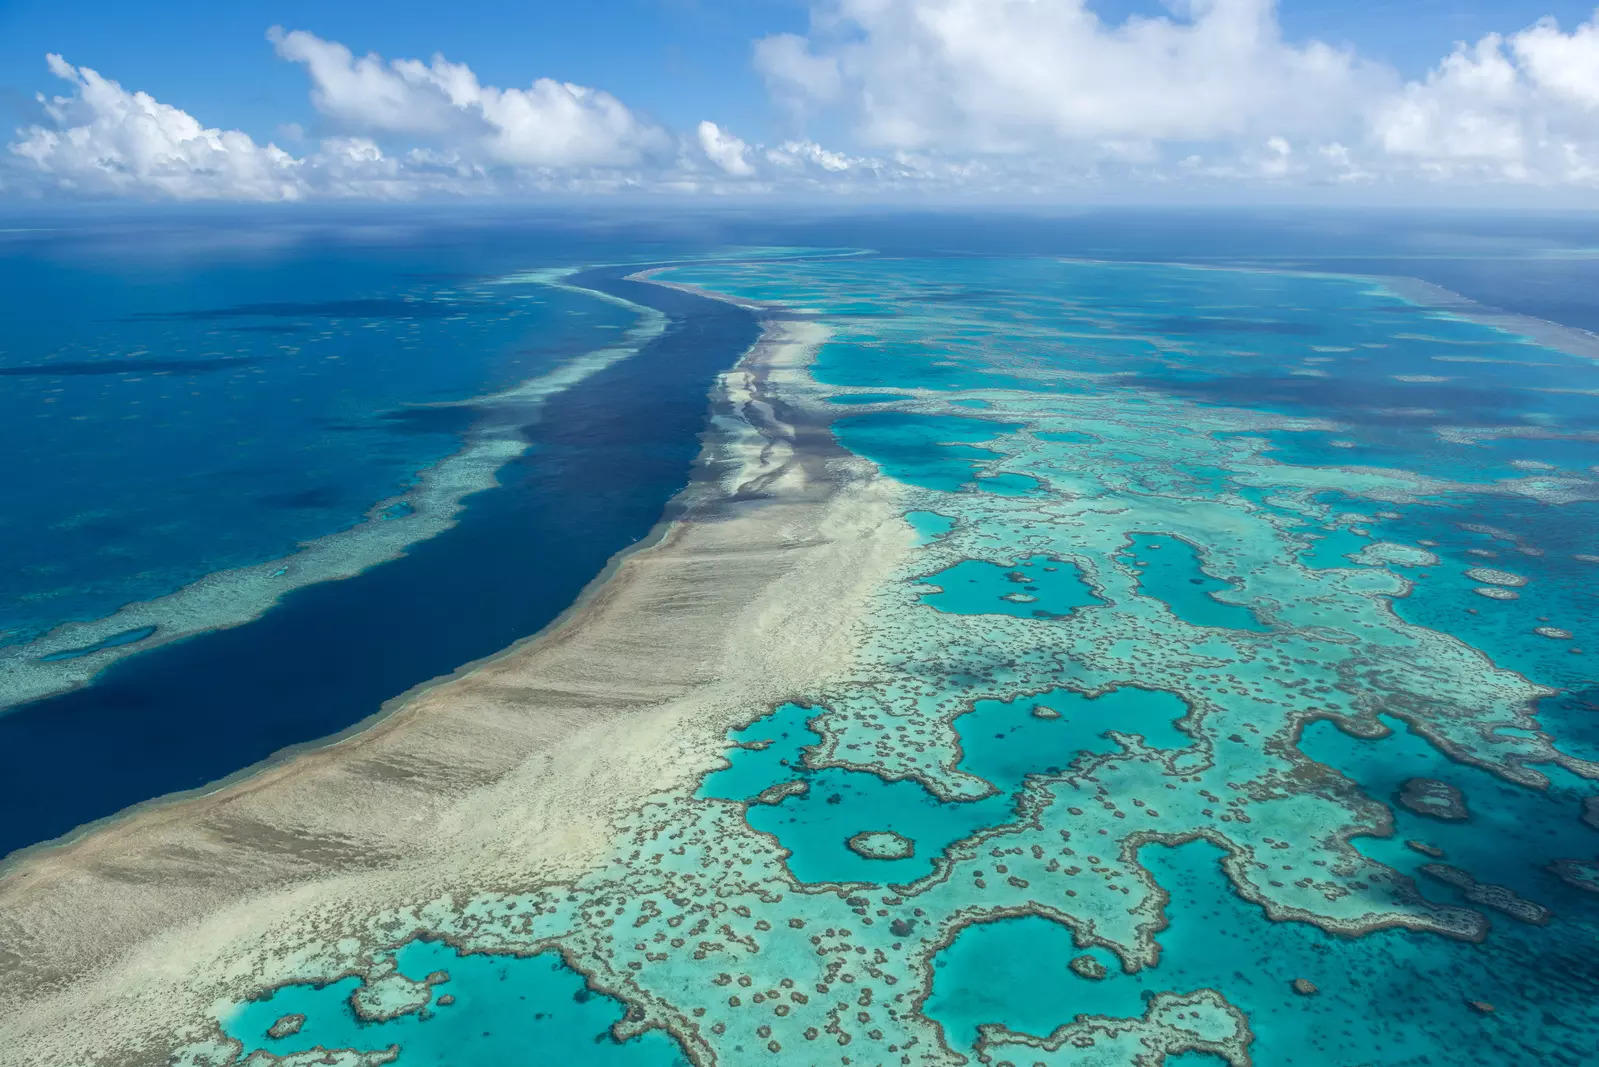 Australian govt announces $703 mn funding for Great Barrier Reef